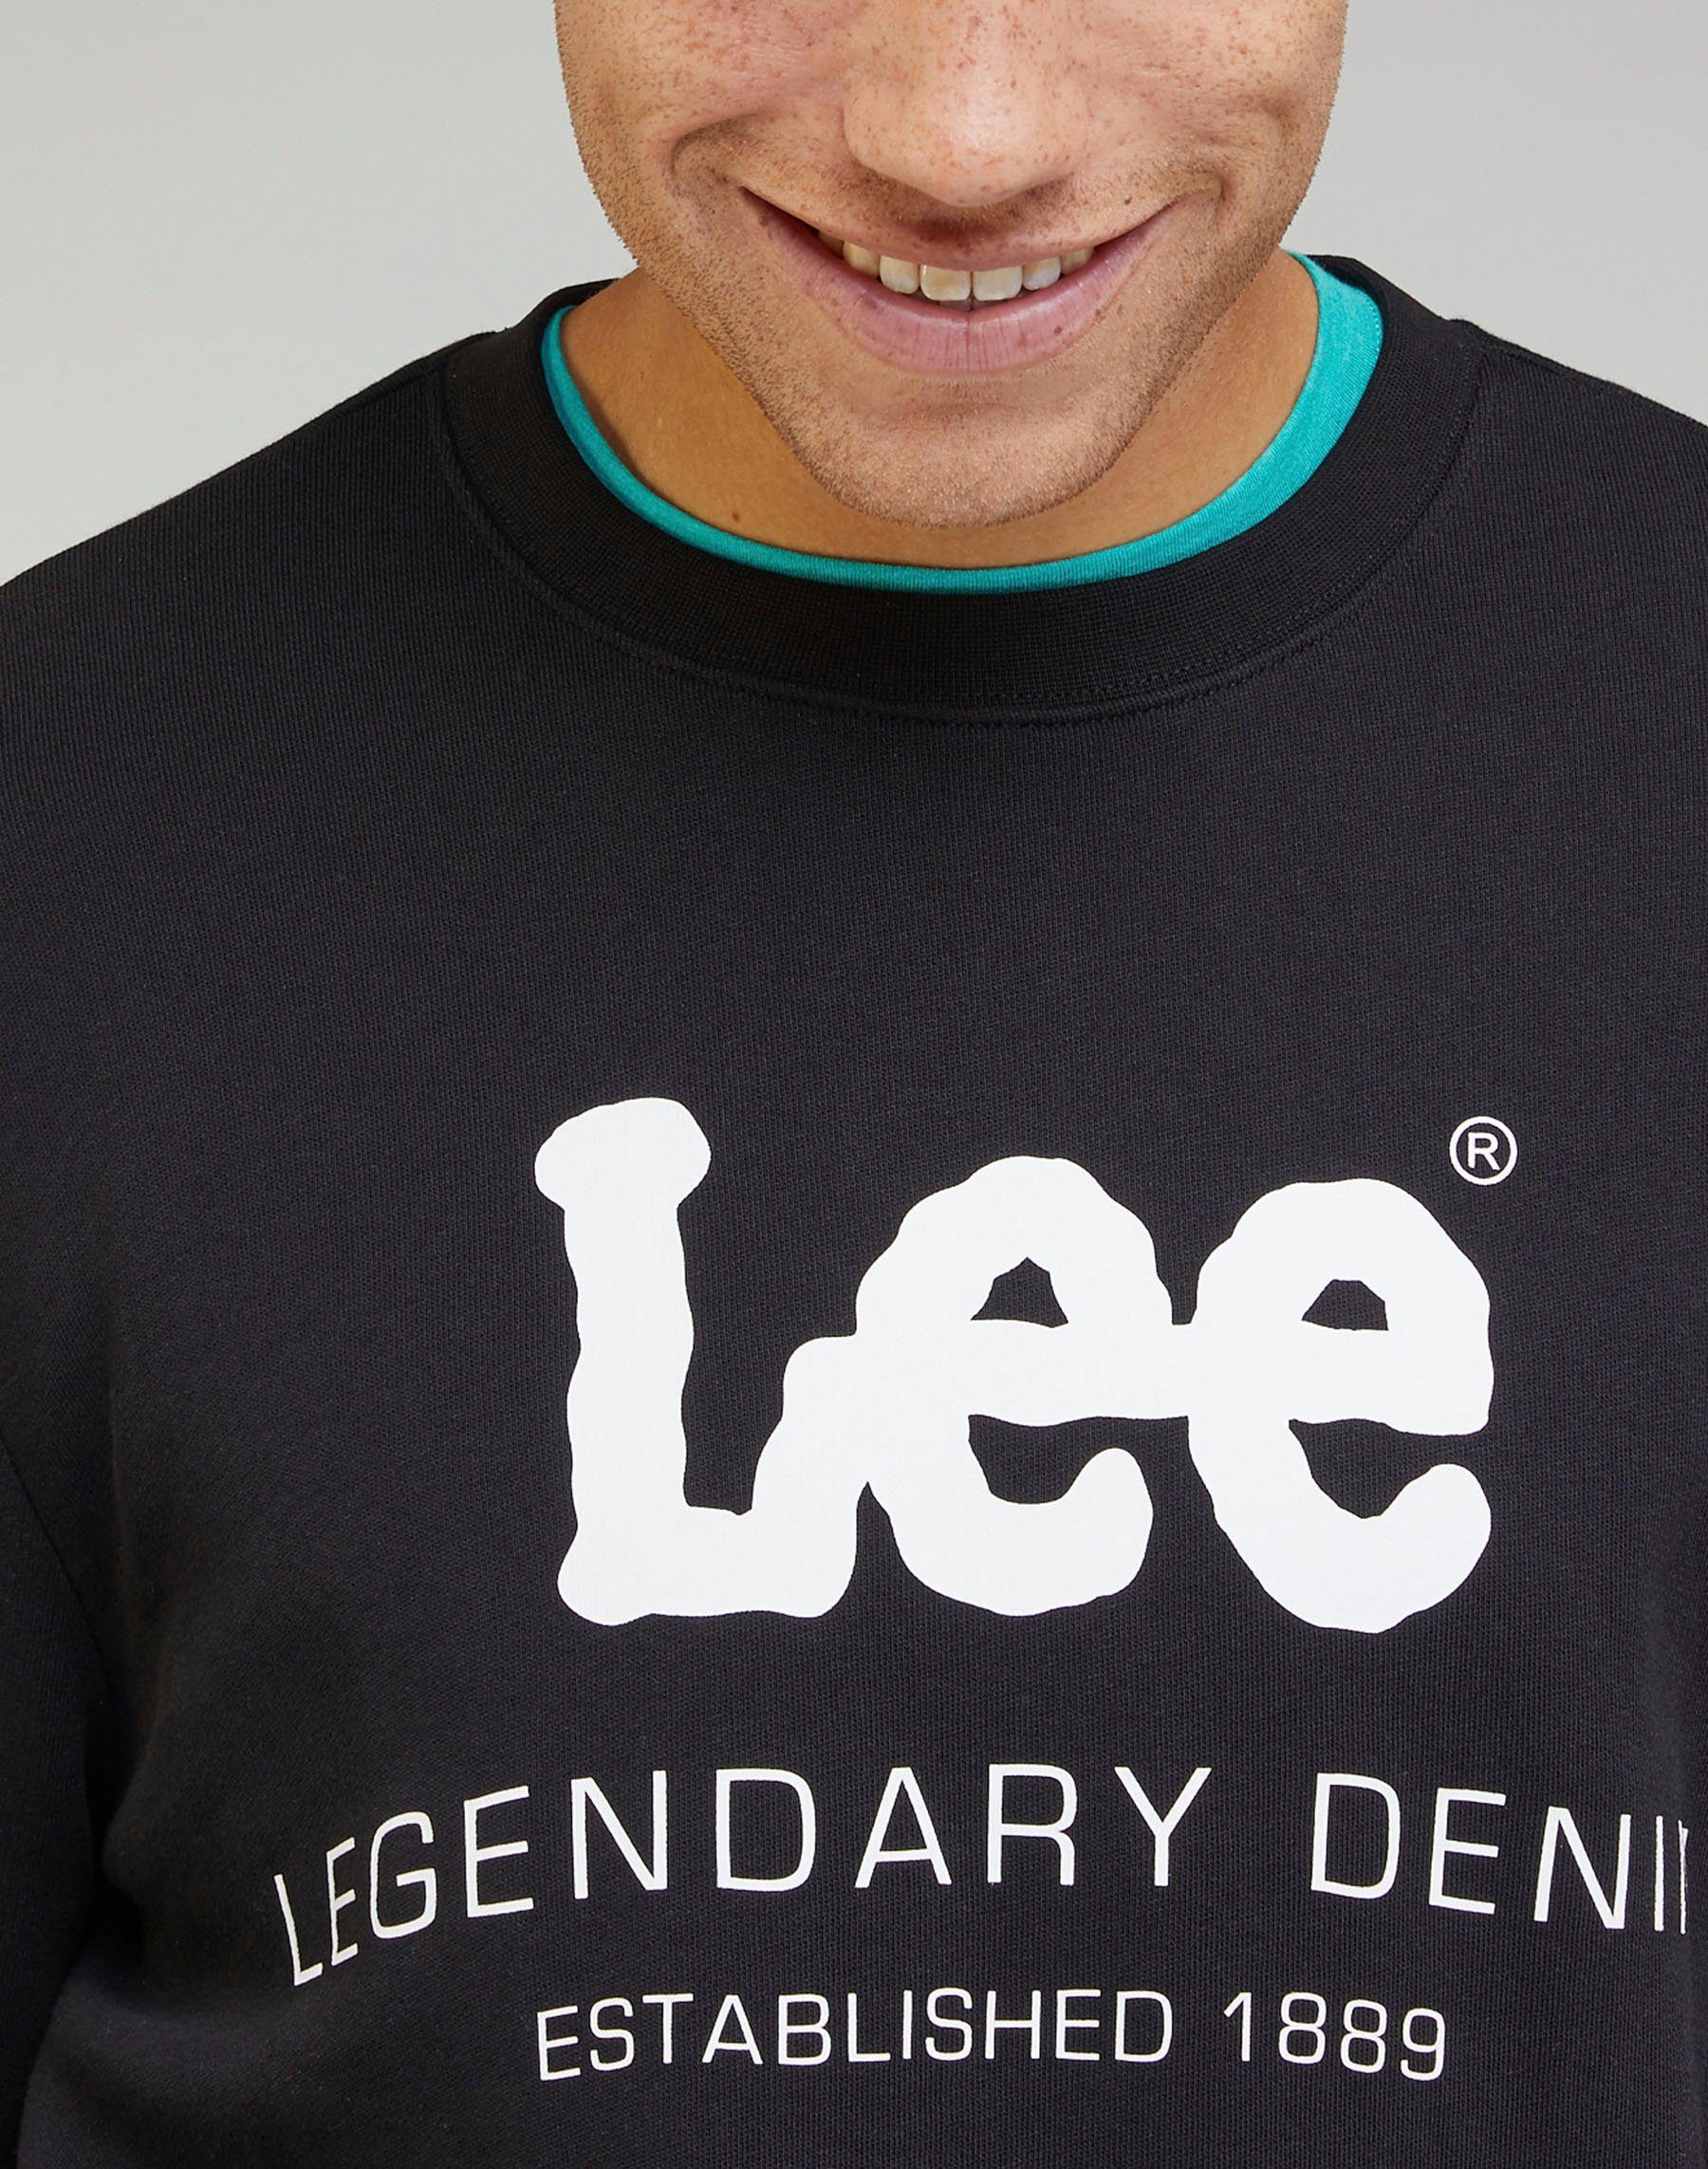 Sweatshirt Lee® black LEGENDARY DENIM CREW